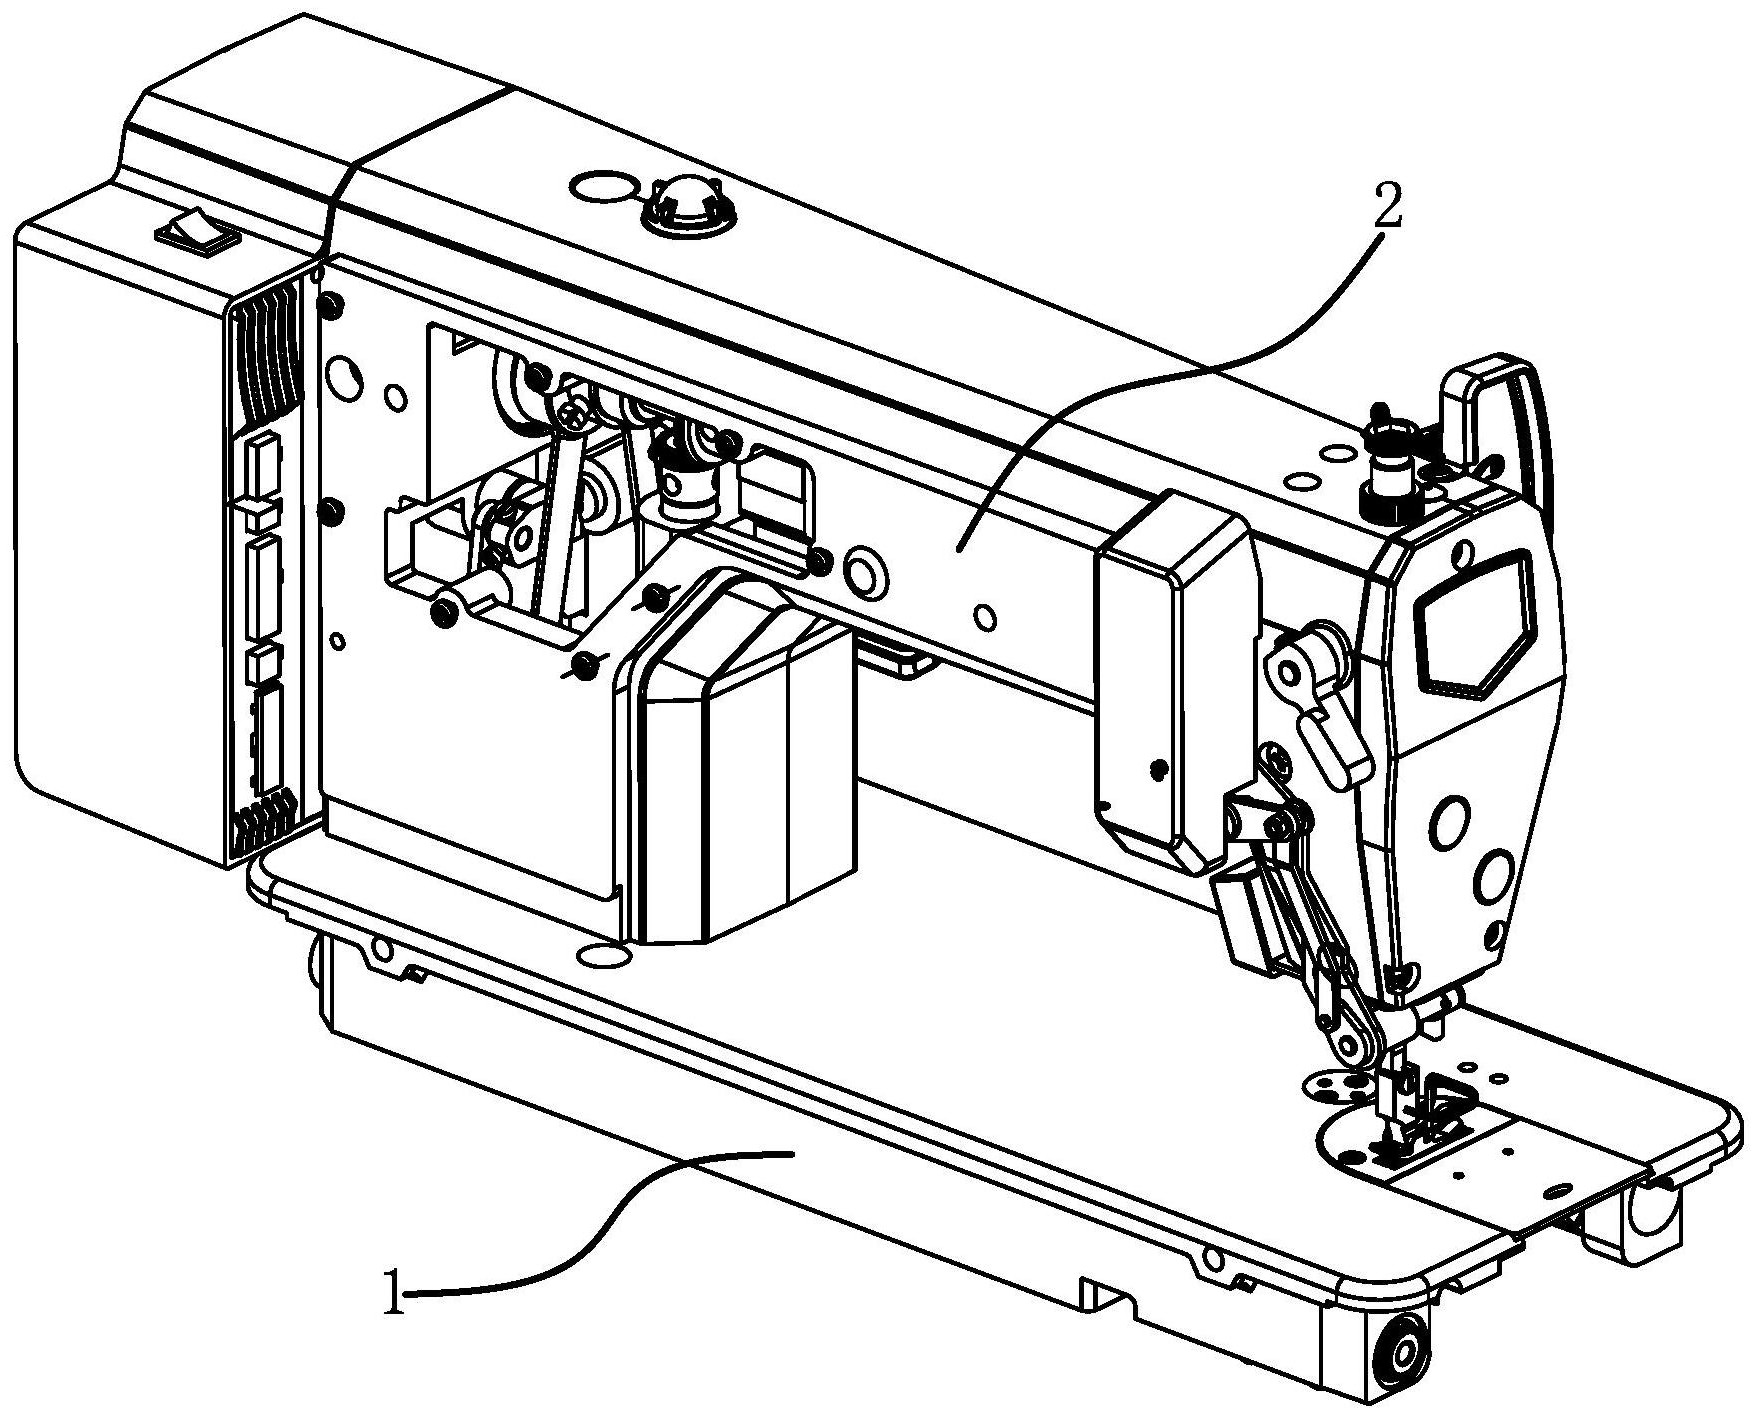 缝纫机结构简图机械图片